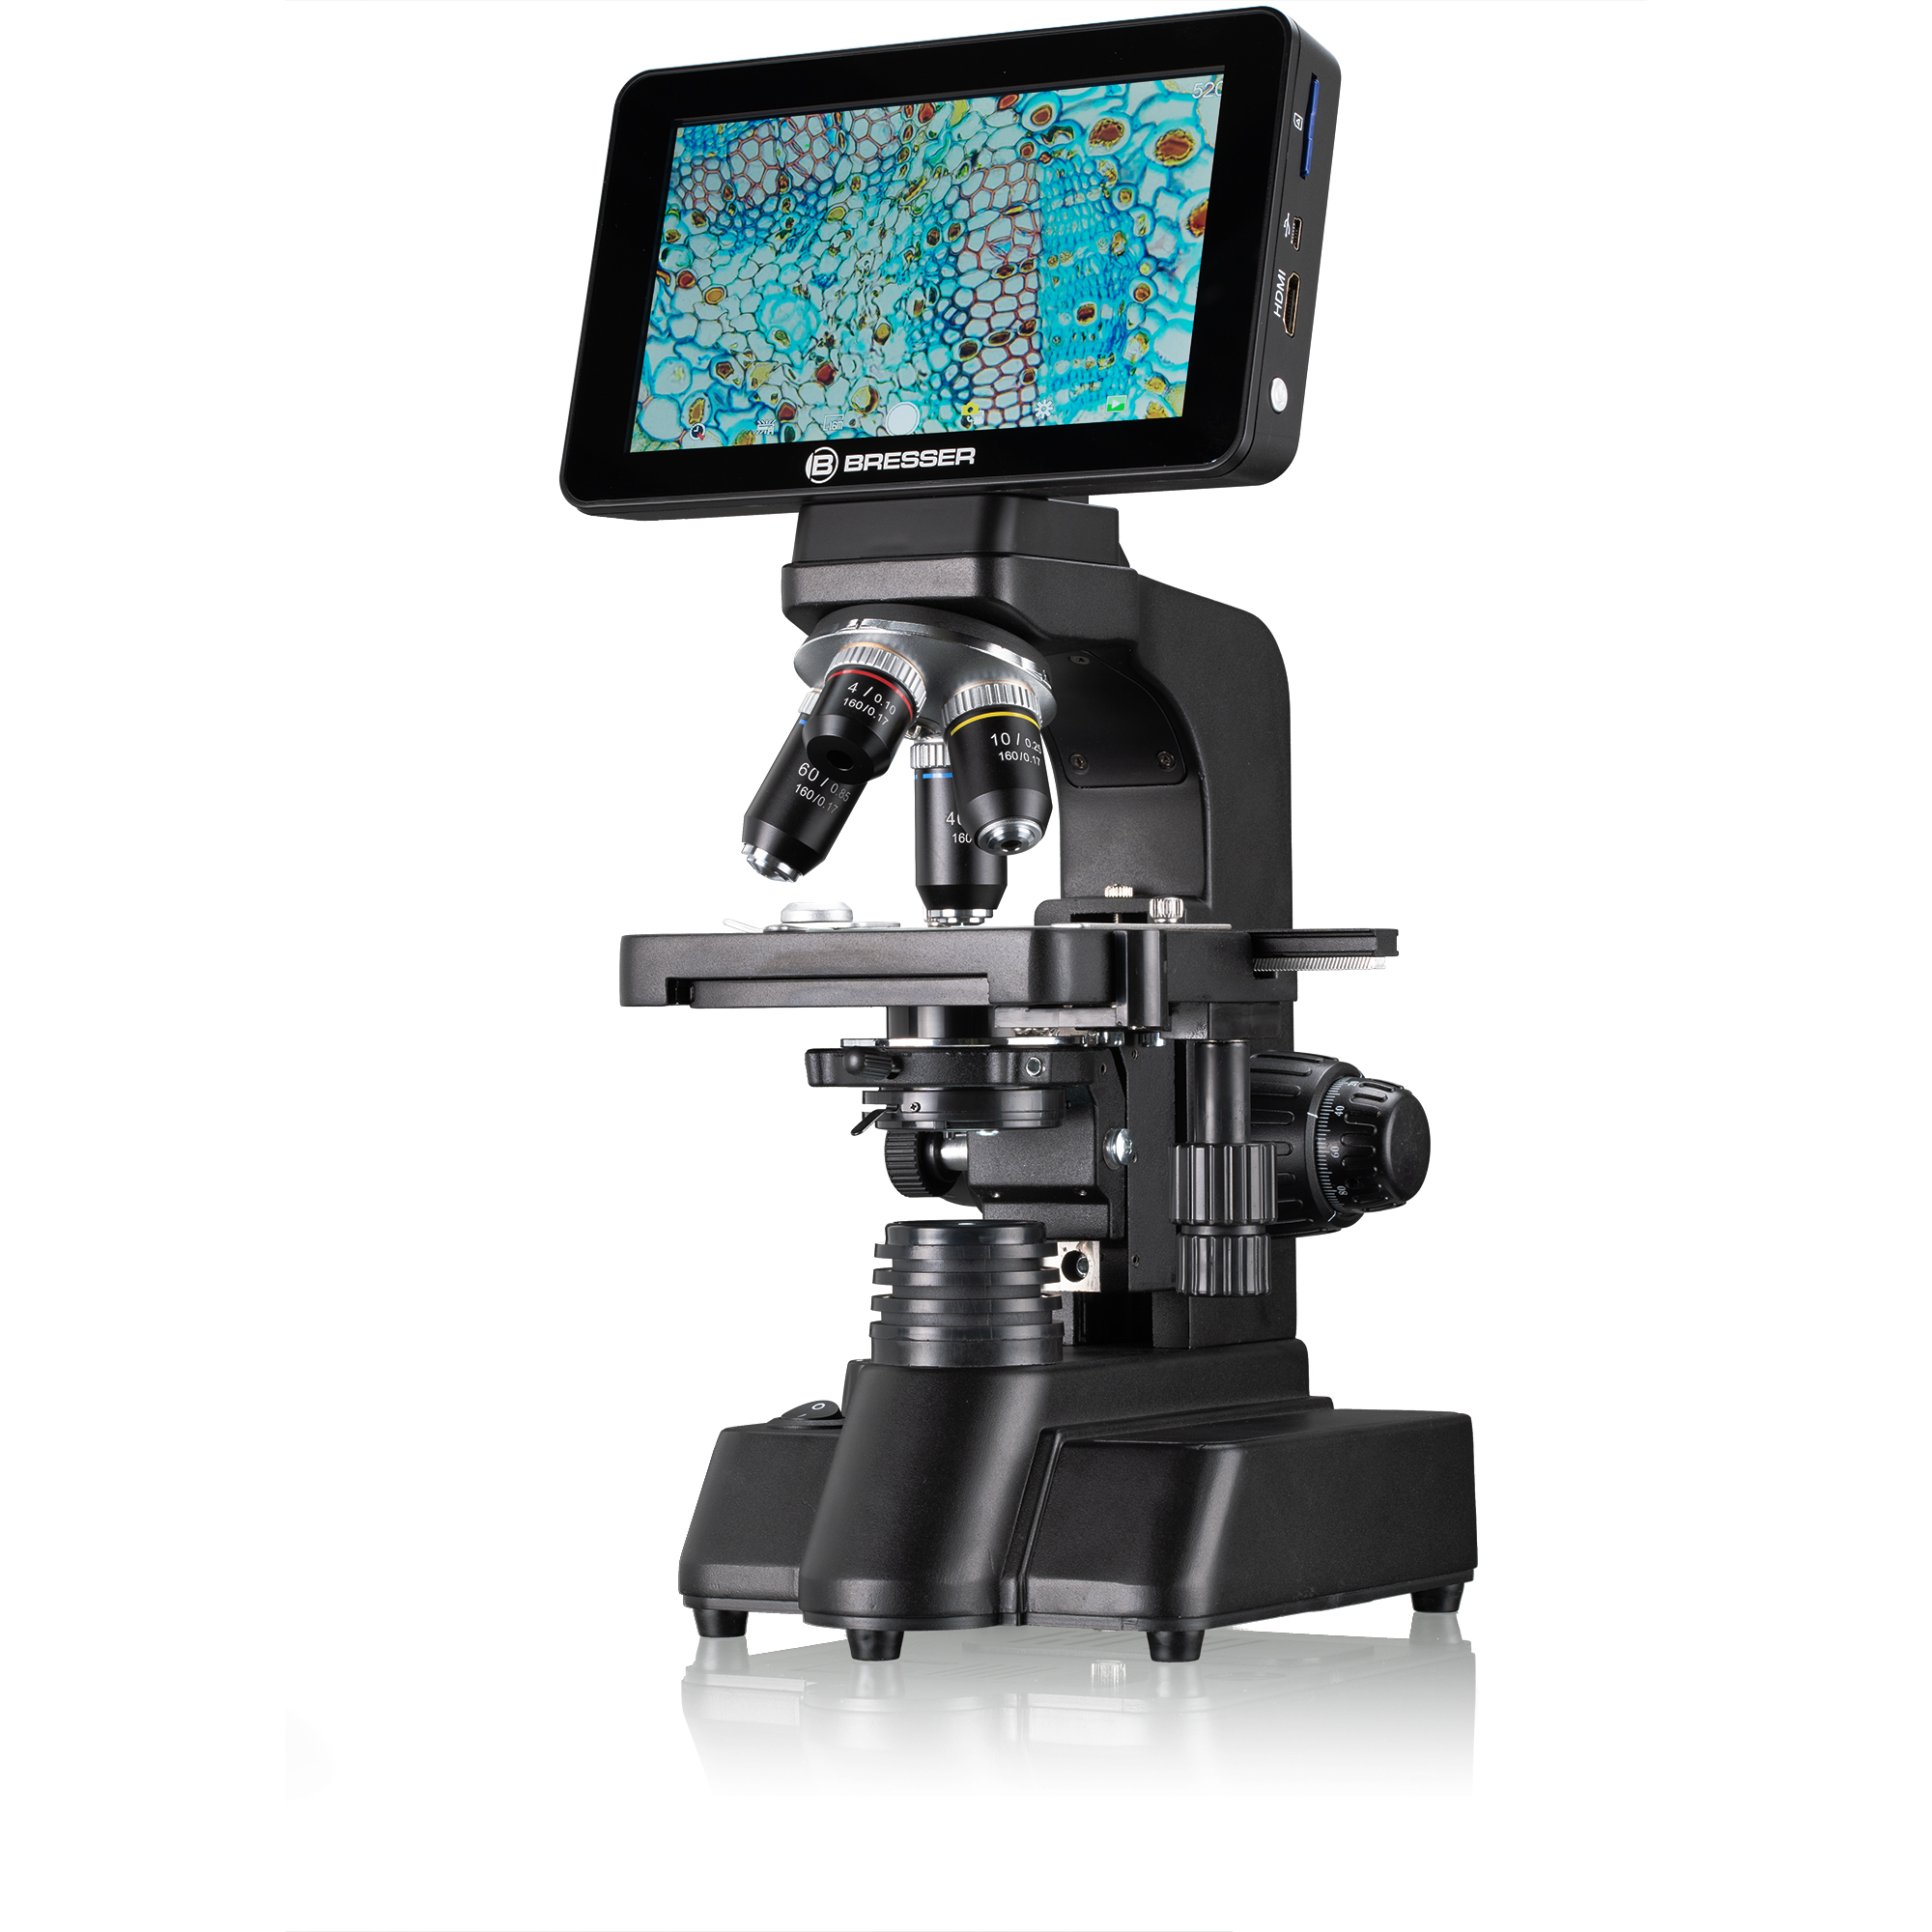   Un microscopio digitale per utenti esigenti  